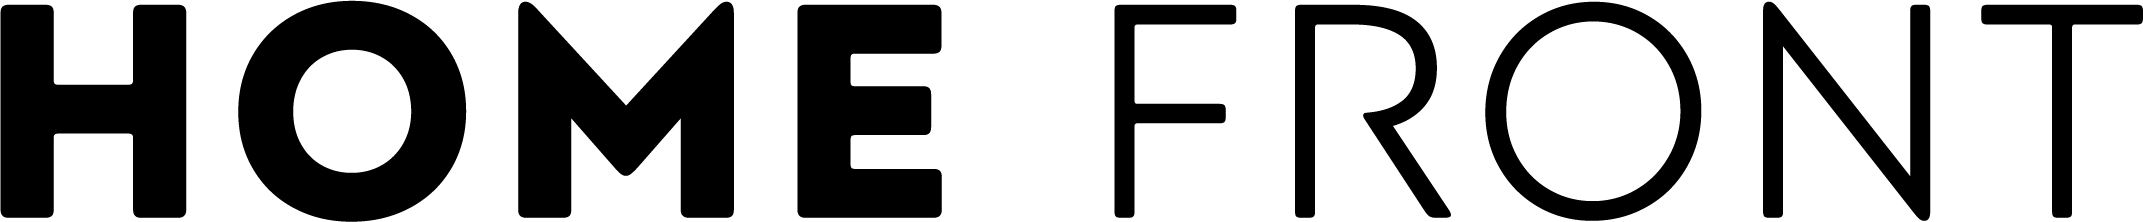 Homefront Logo Transparent Free PNG